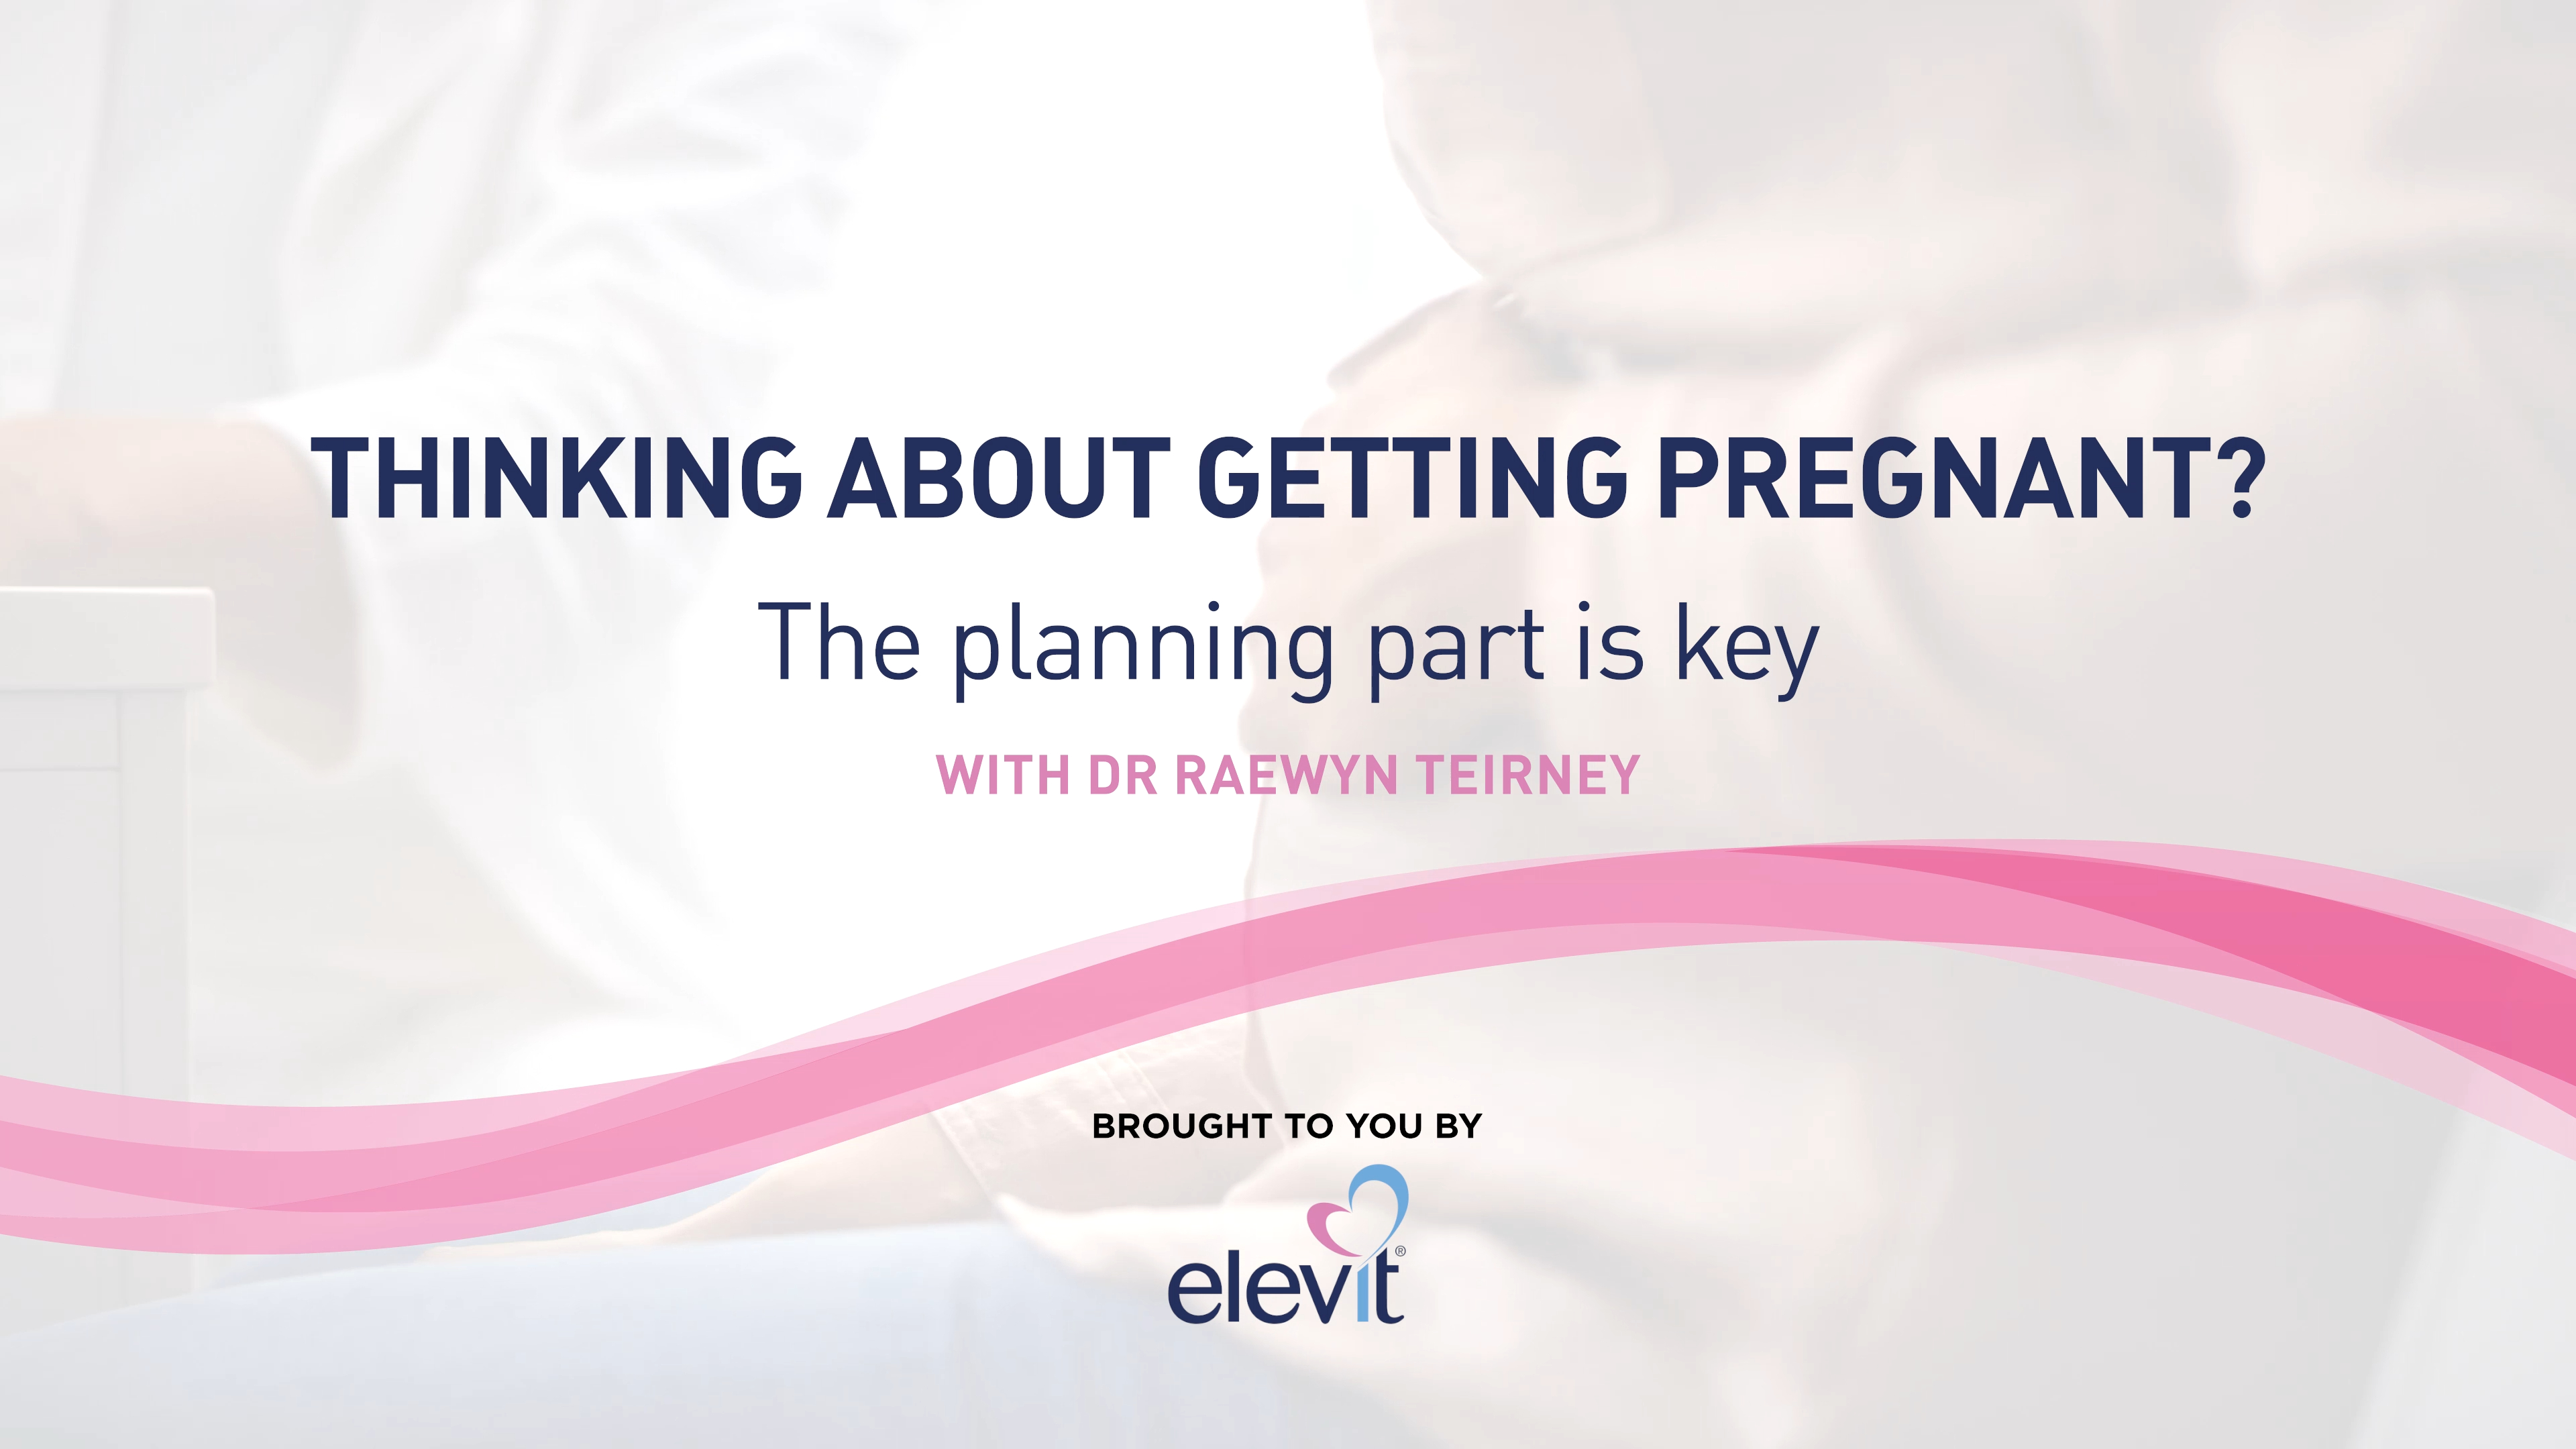 Pregnancy planning with Dr Raewyn Teirney